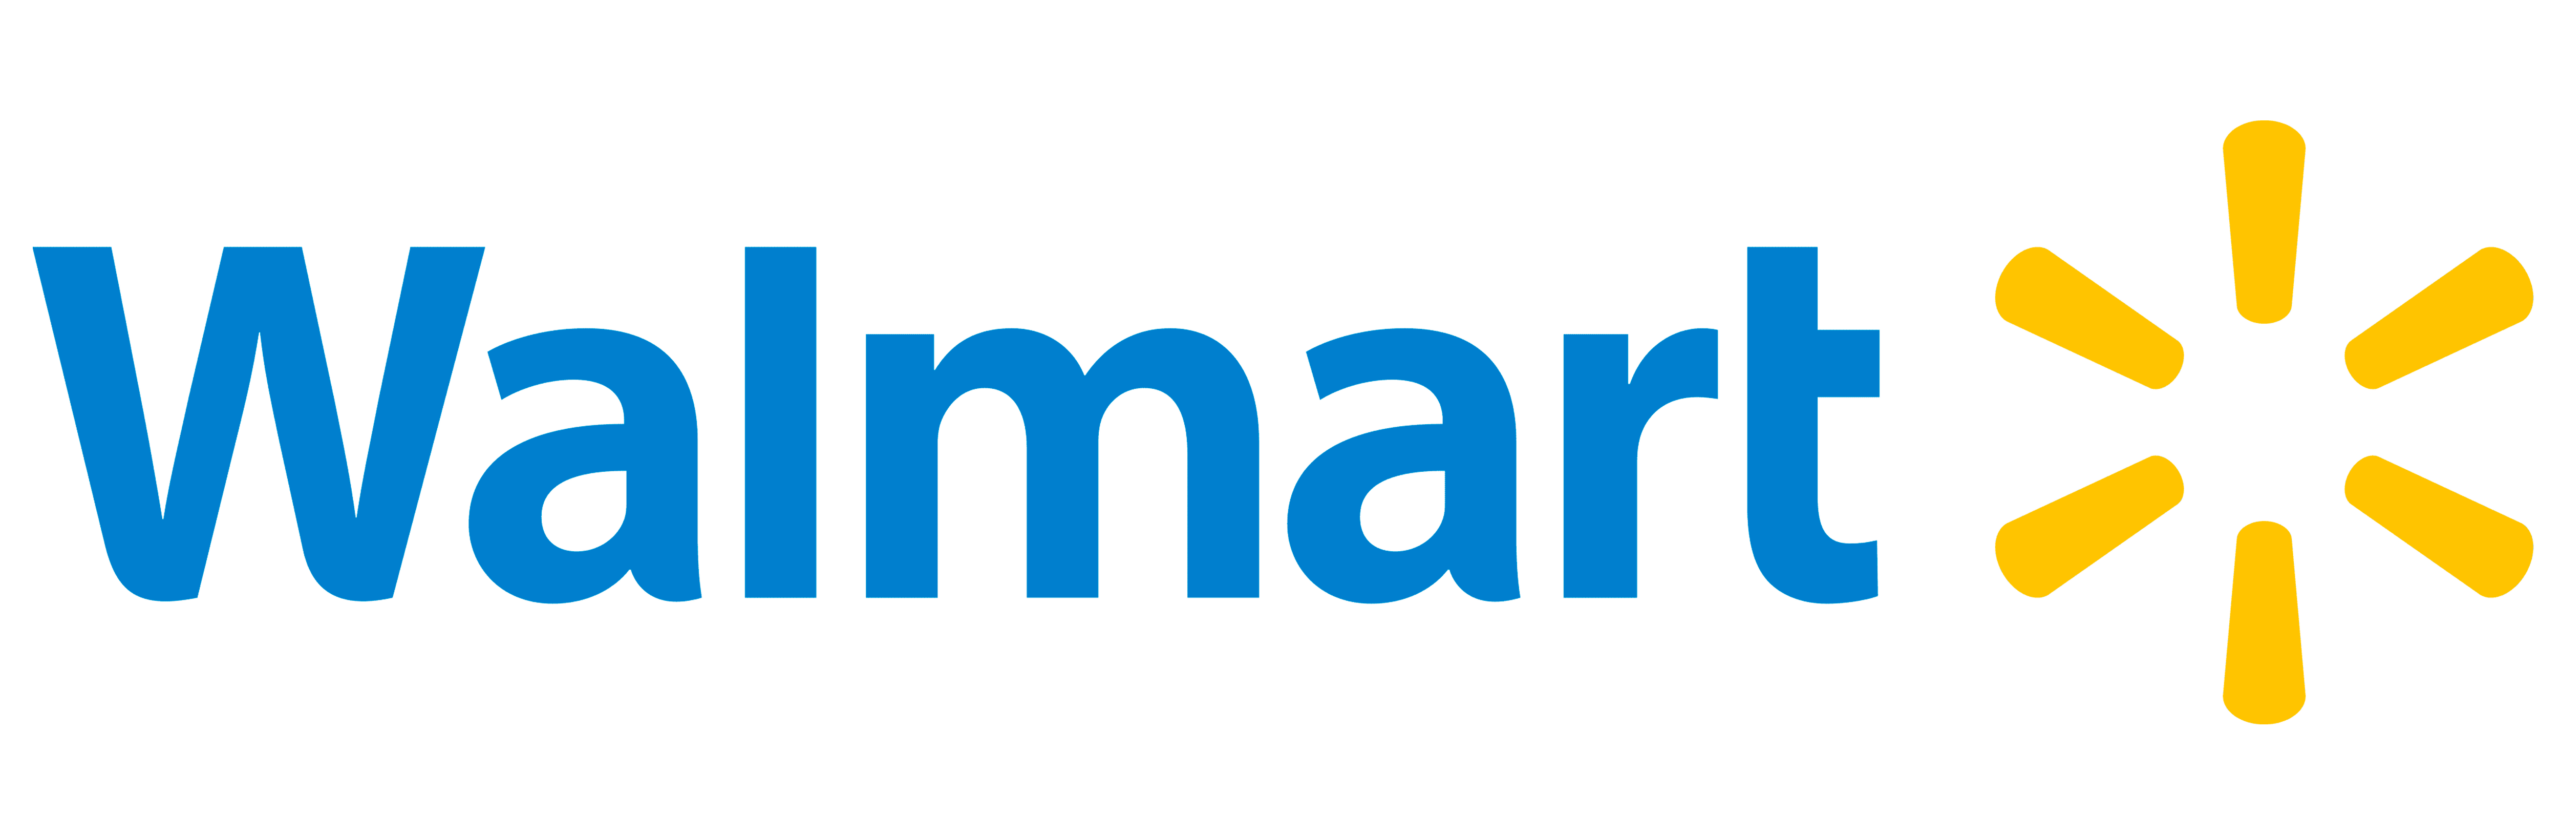 logo-walmart-1.png